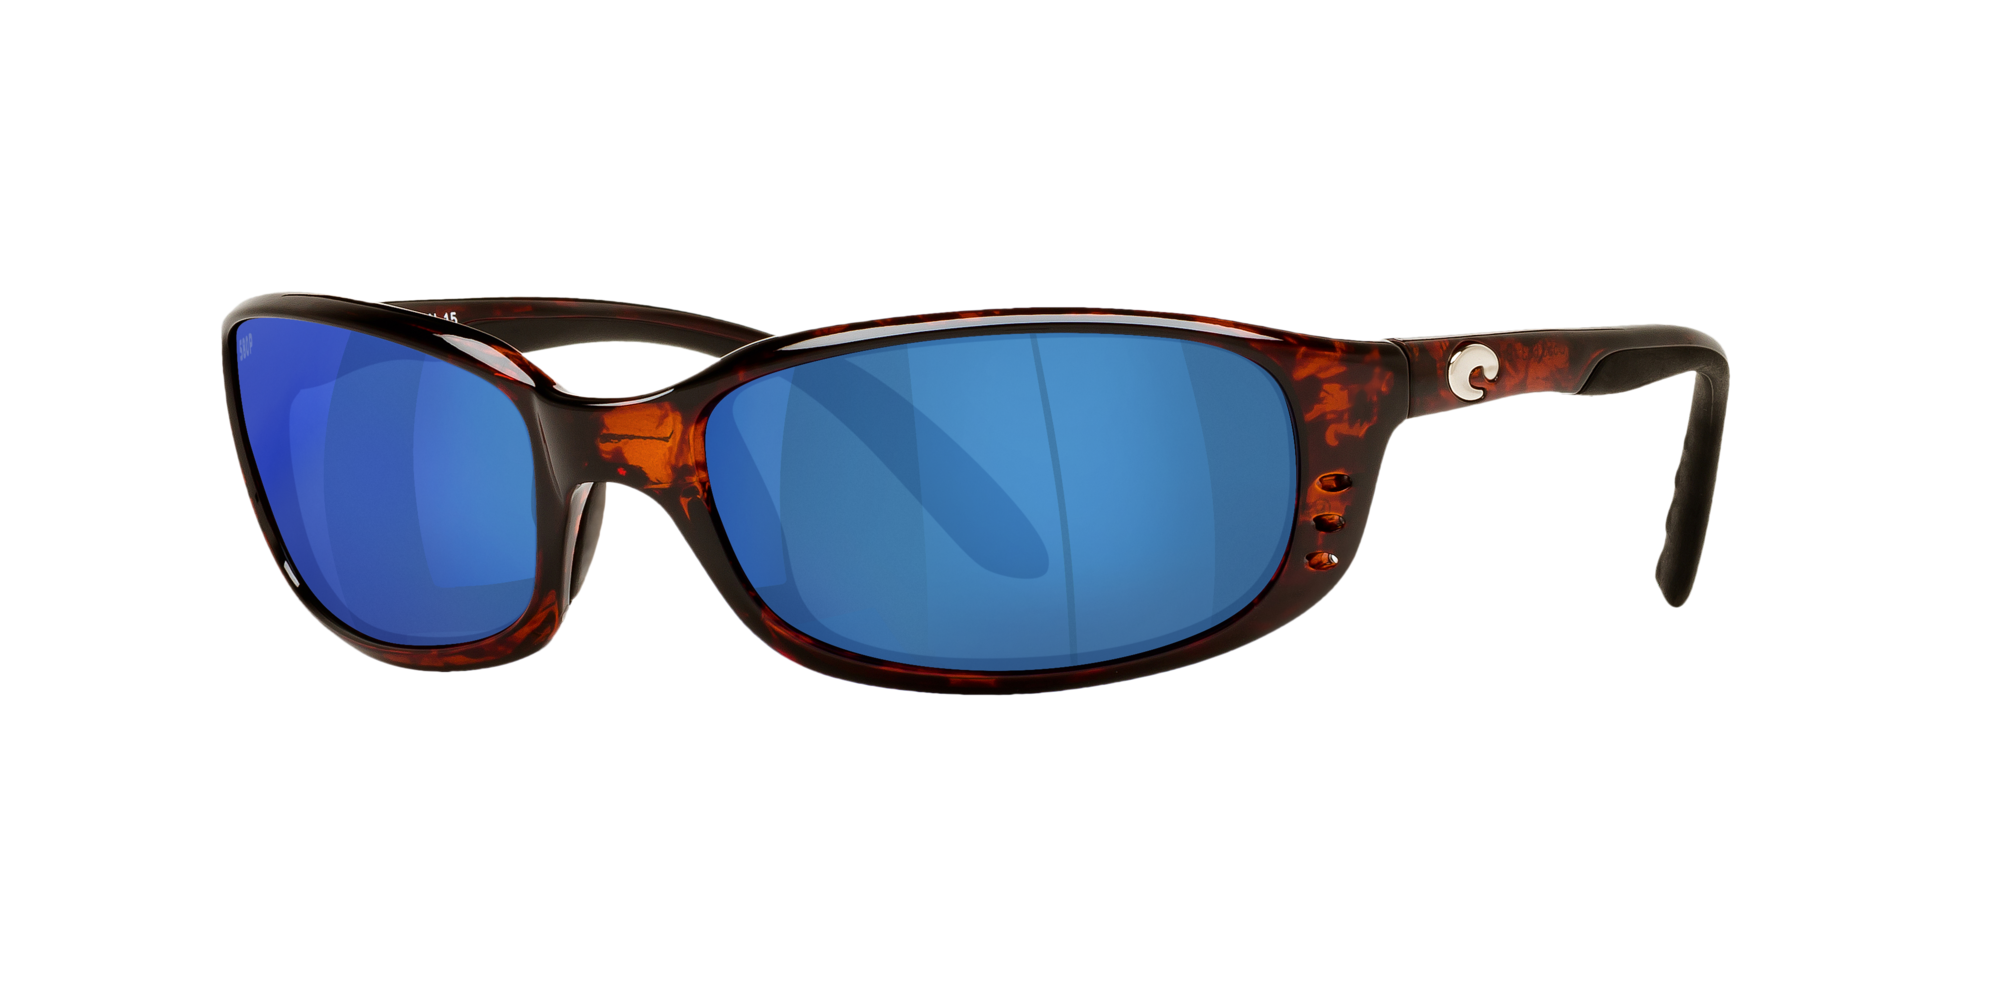 2.50 Sunglasses BR 11 OGP 2.50 97963530934 Costa Del Mar New Costa Del Mar Brine Polarized Gray 580P 